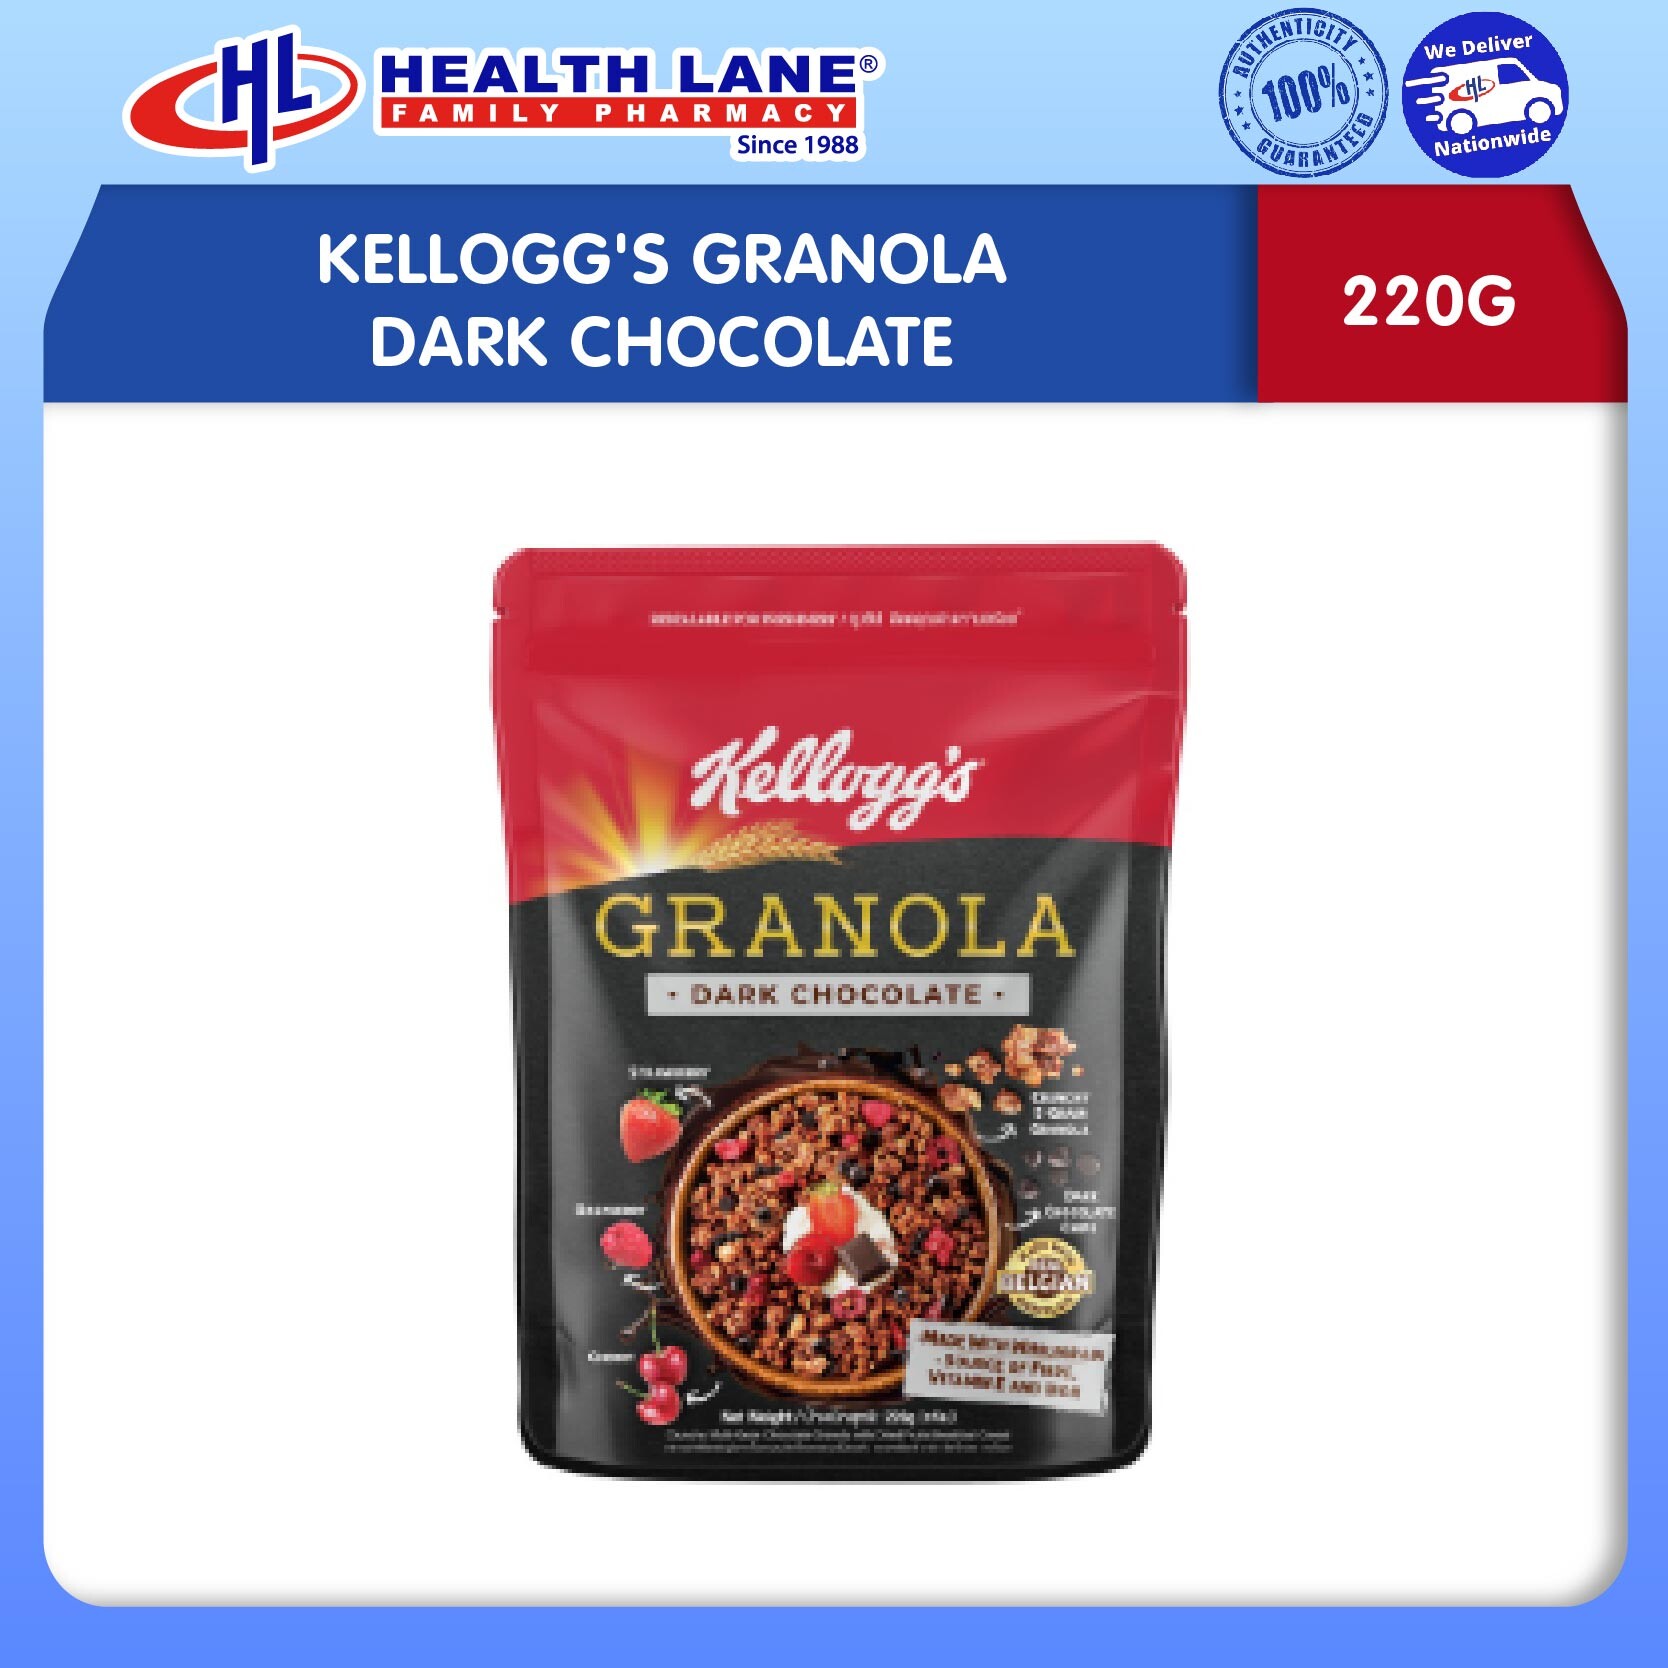 KELLOGG'S GRANOLA DARK CHOCOLATE (220G)